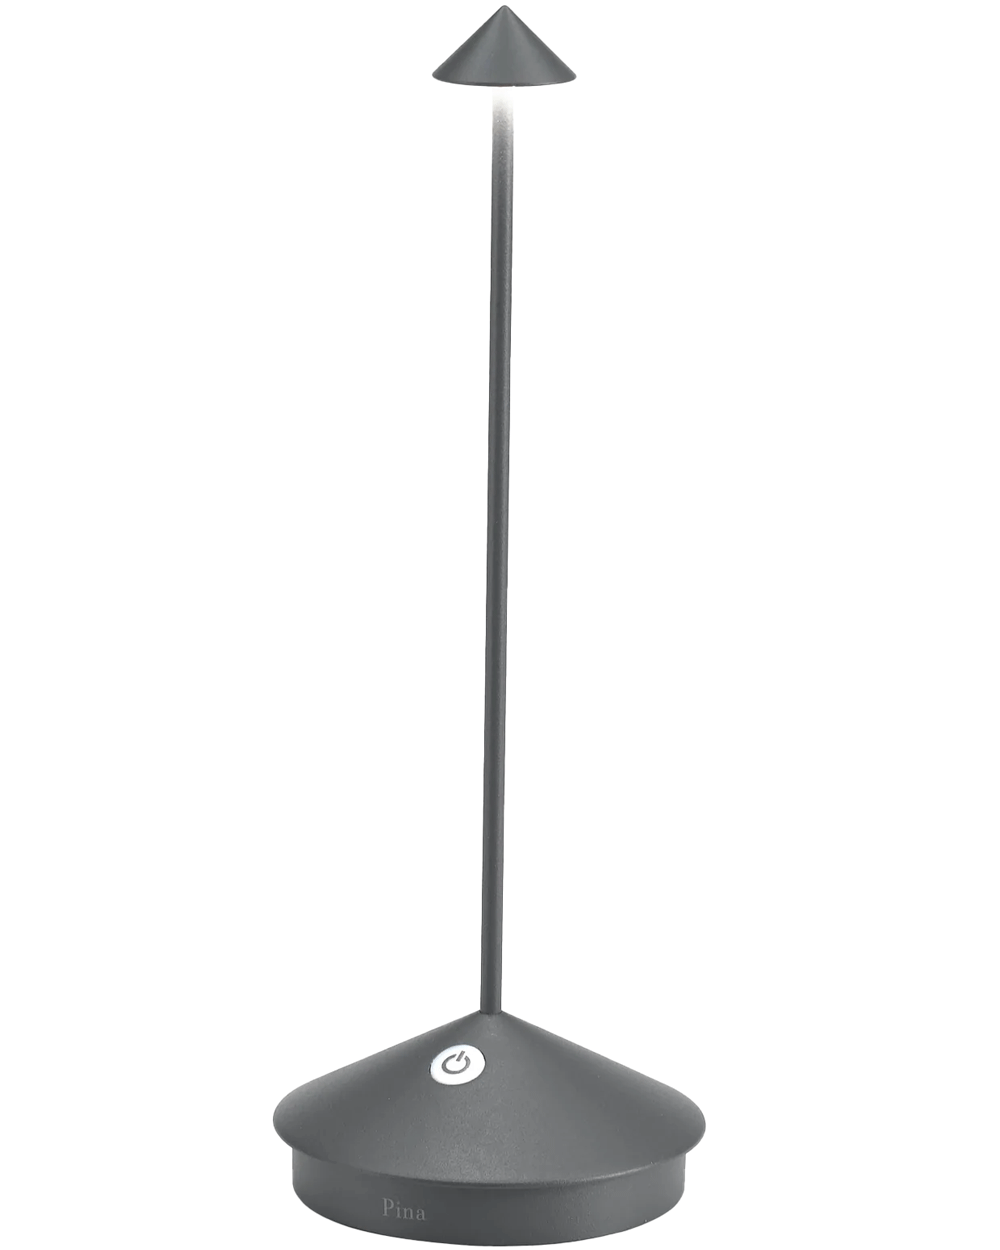 Pina Pro Lamp in Dark Grey